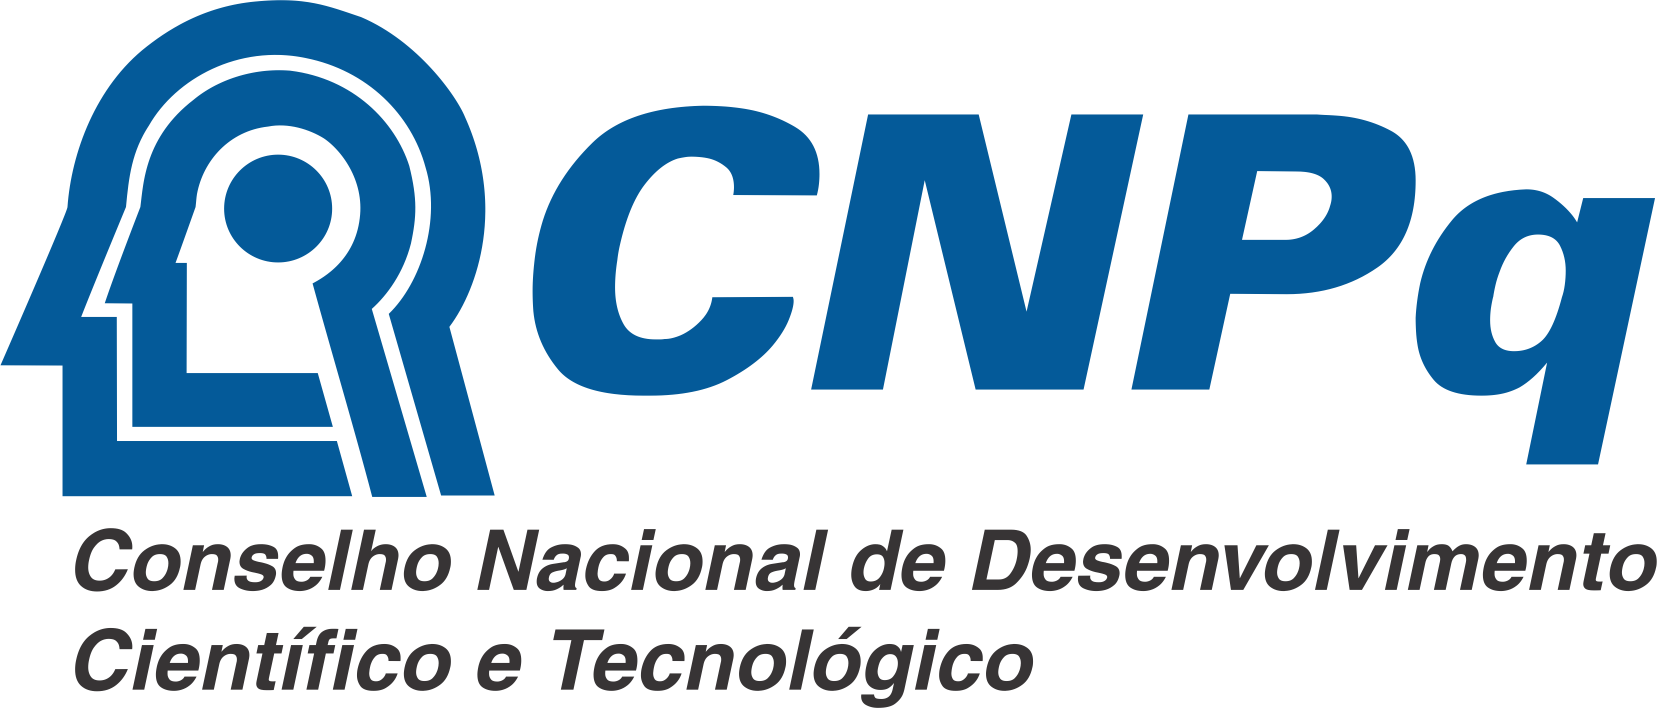 CNPq - Conselho Nacional de Desenvolvimento Cientfico e Tecnolgico